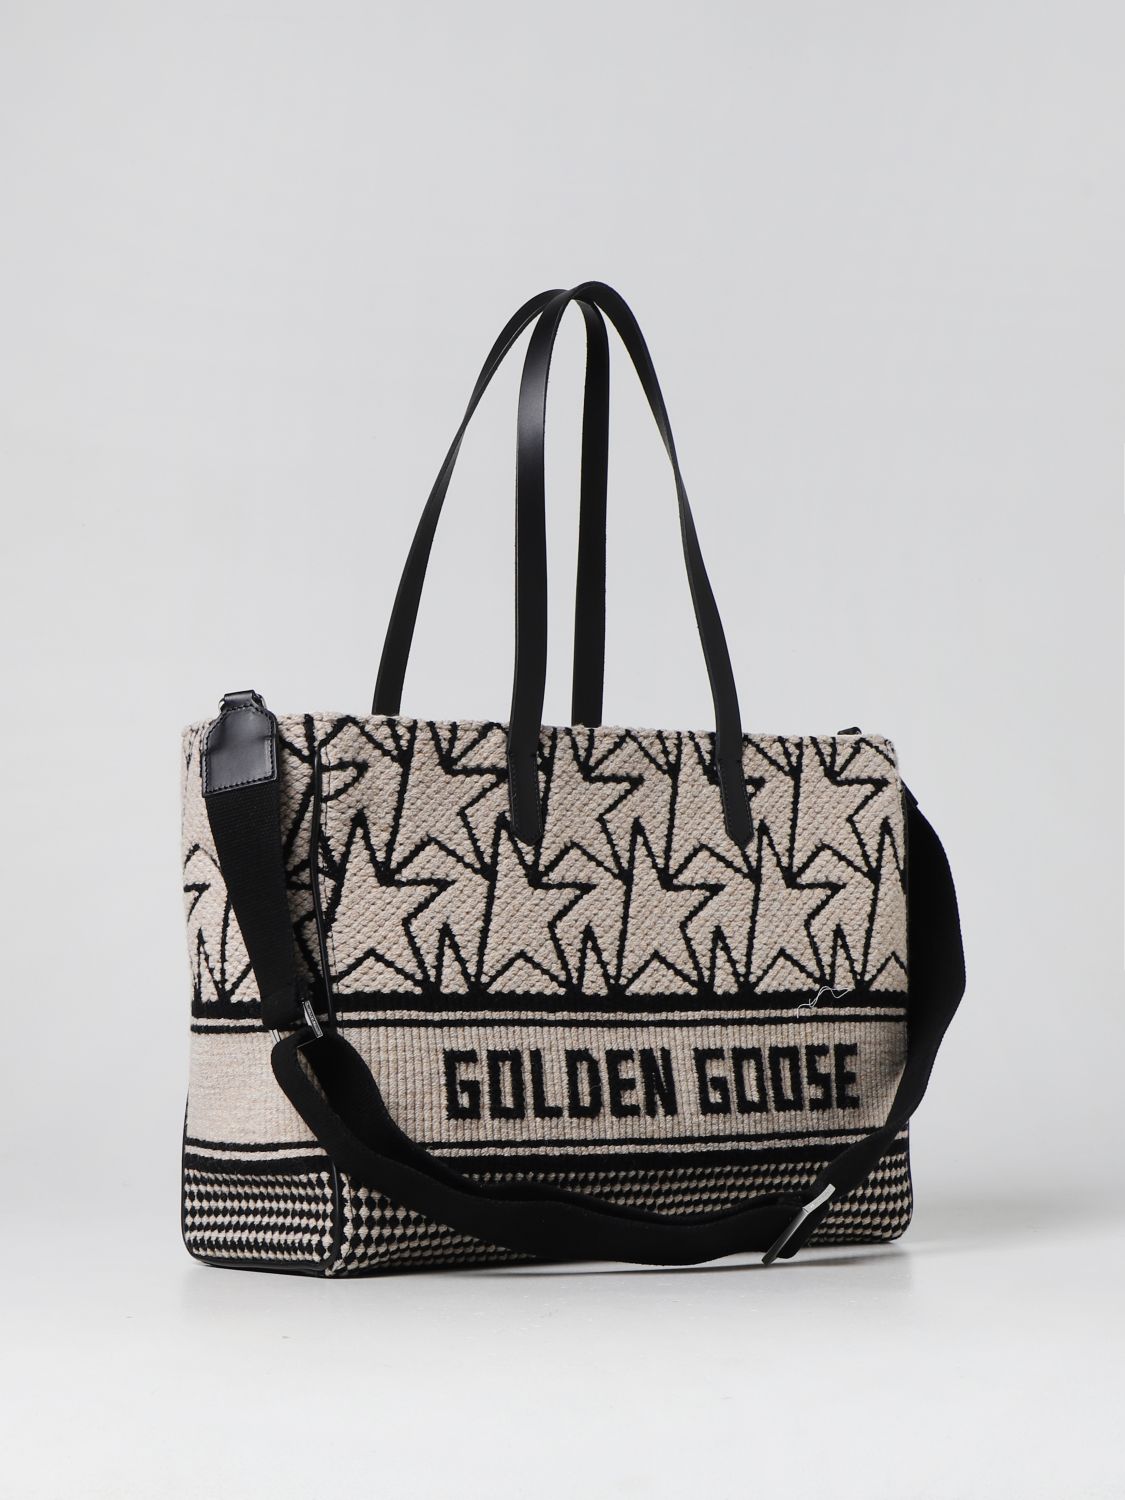 Golden Goose Branded Fleece Tote Bag - White